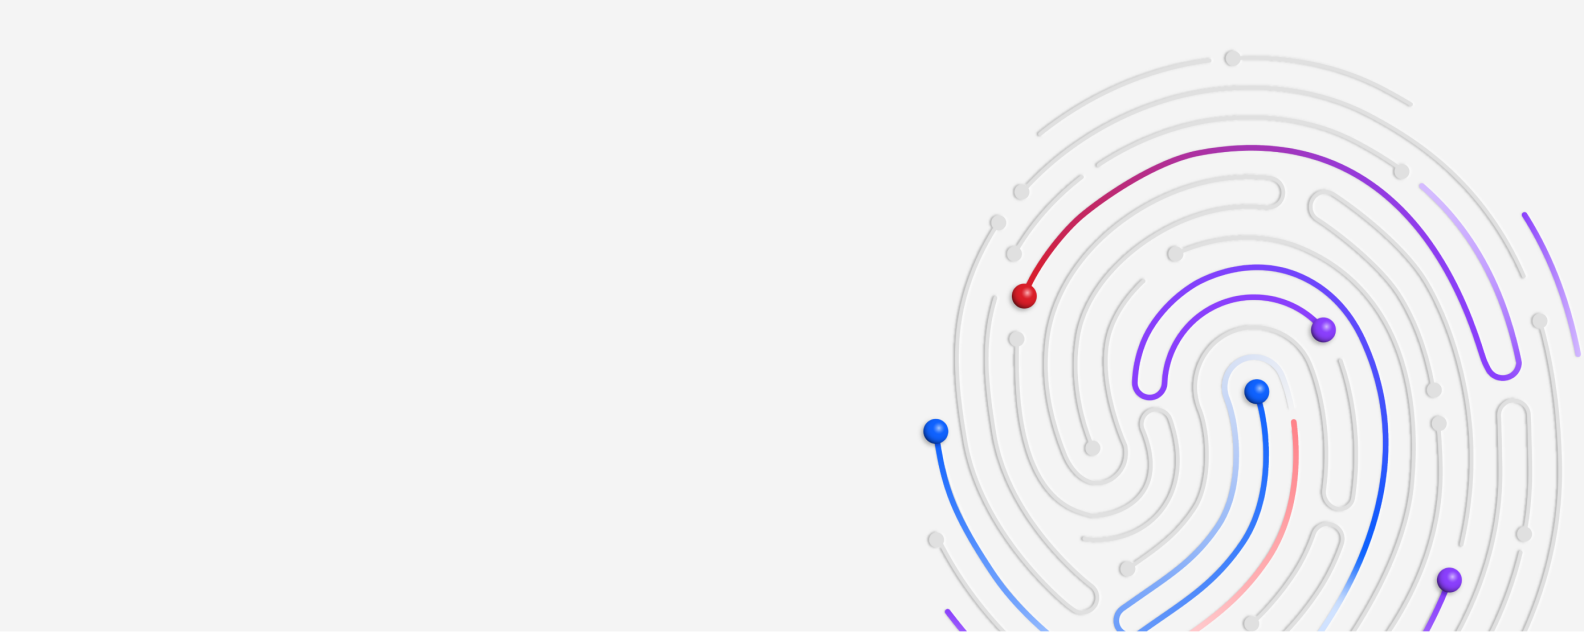 潜在的なサイバー脅威を示す赤、青、紫の渦巻きのある拇印の図